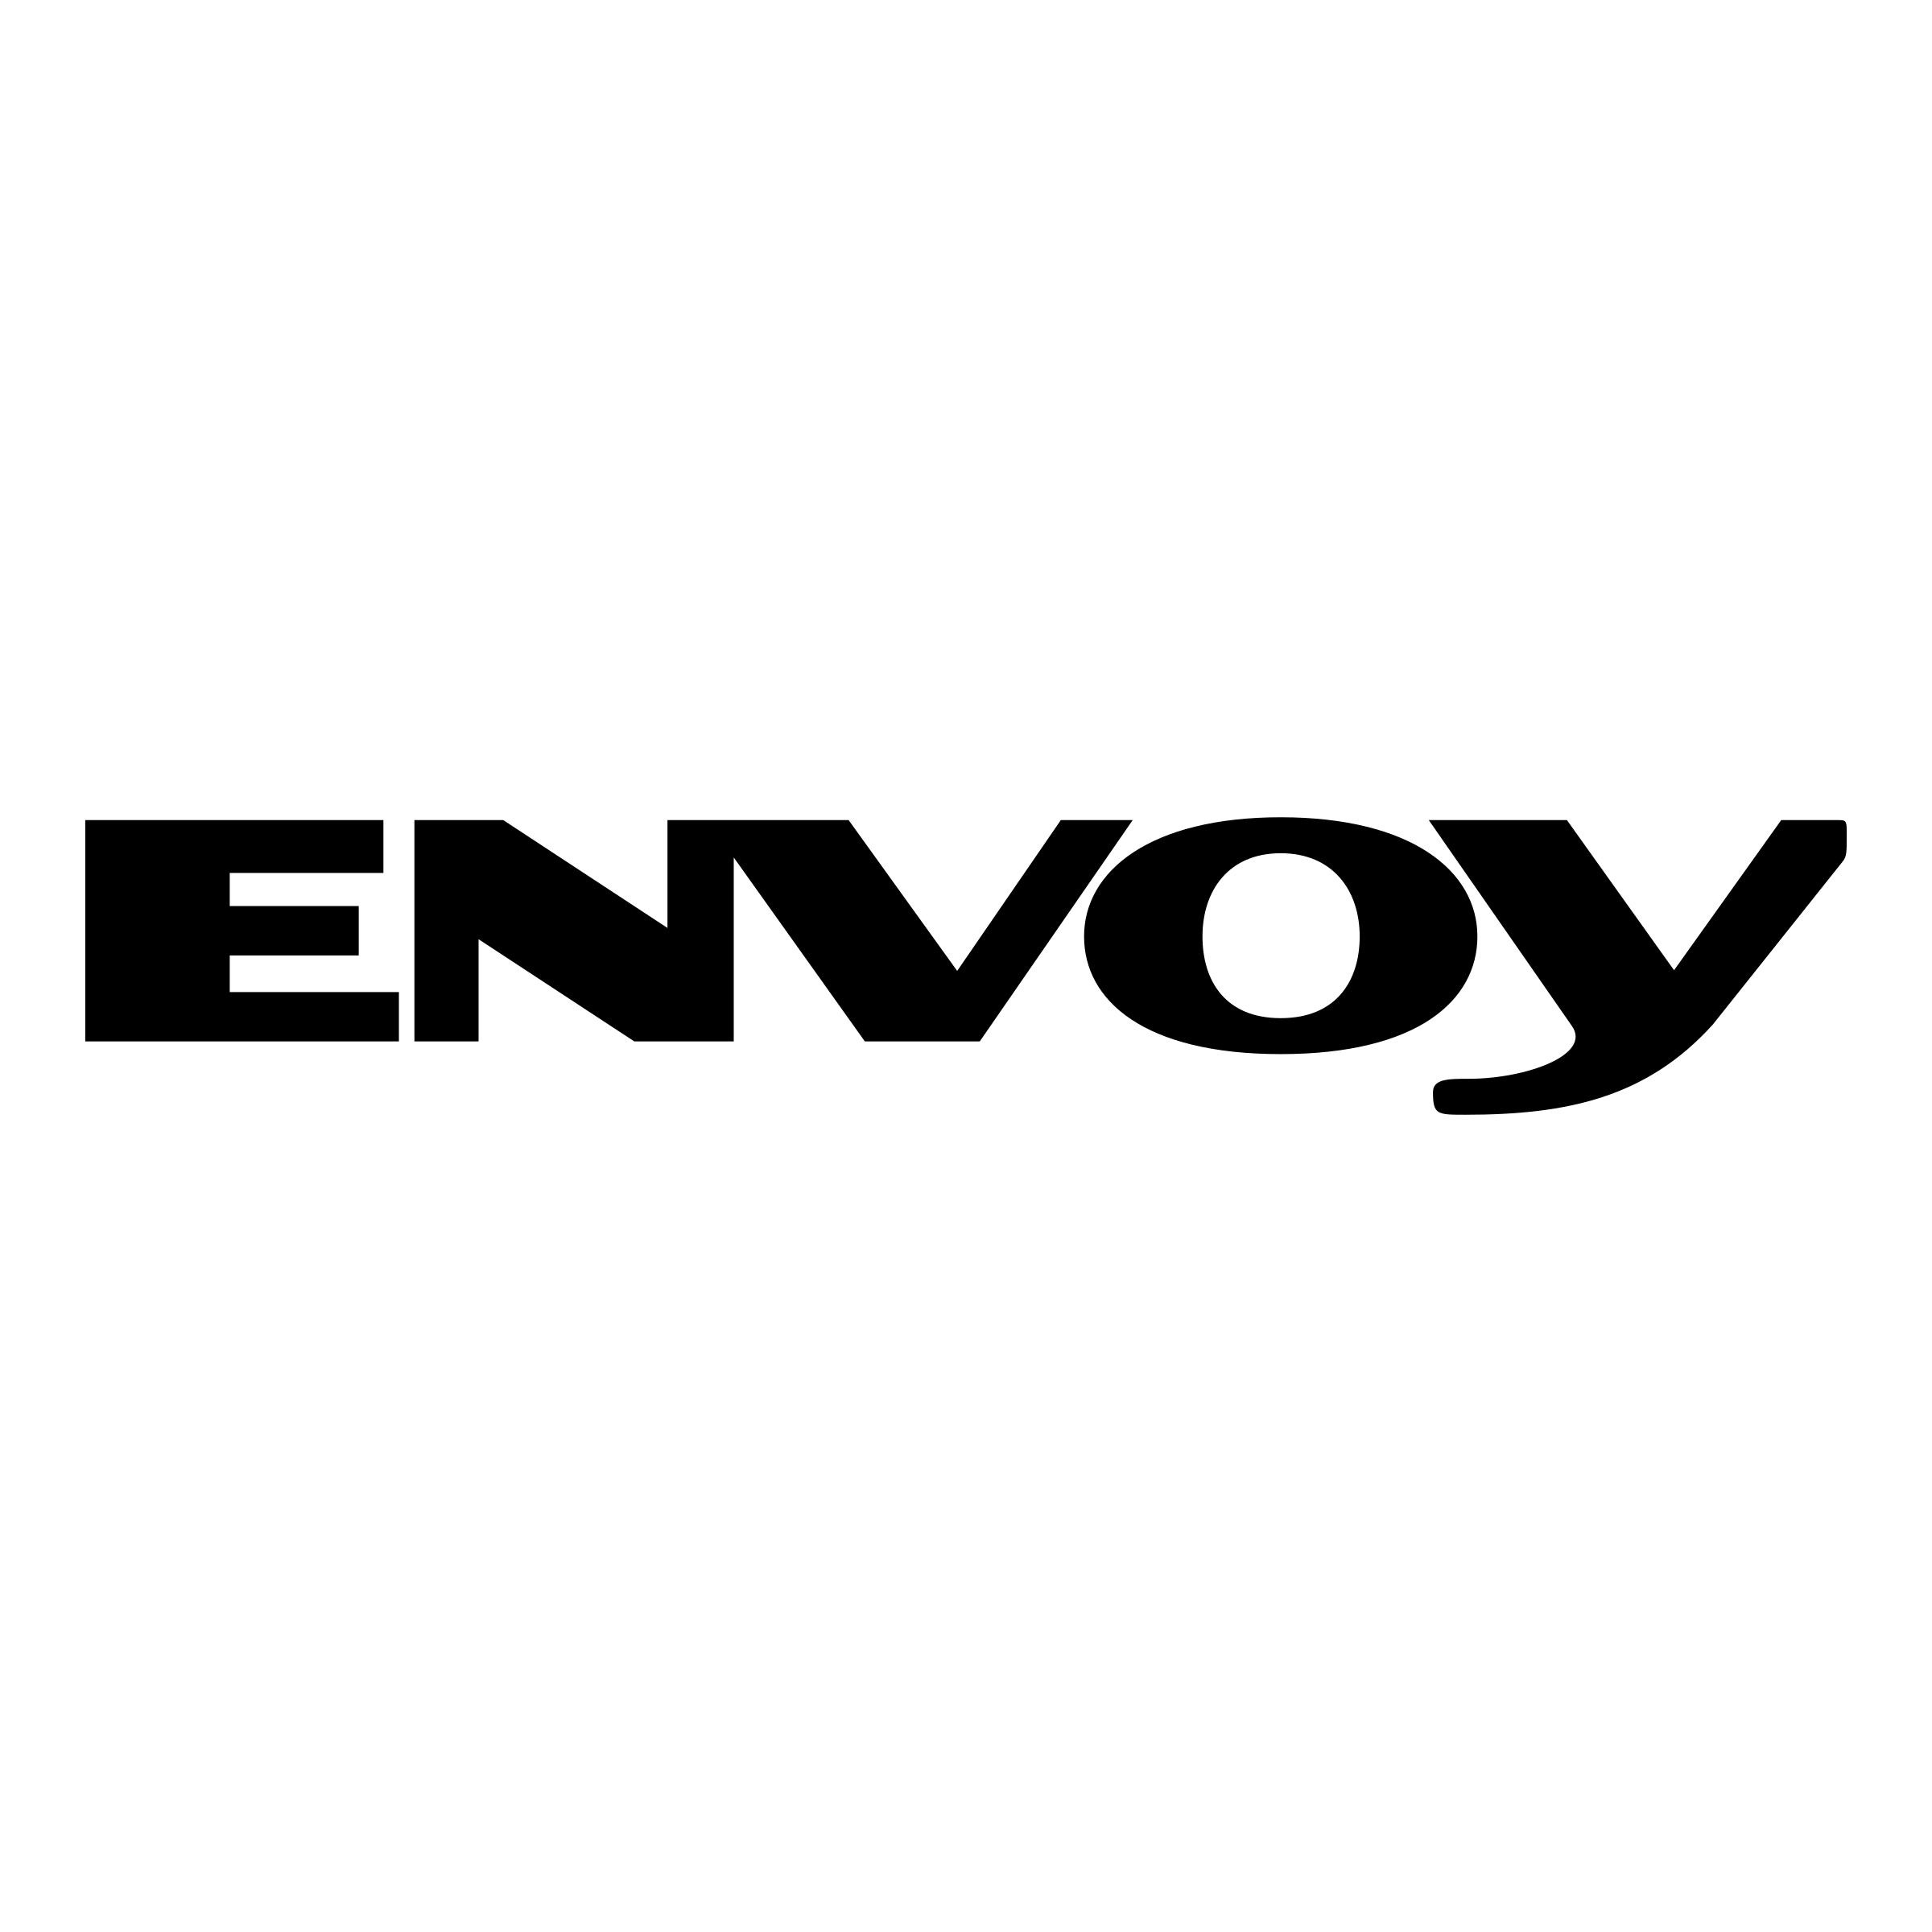 Envoy Logo - Envoy Logo PNG Transparent & SVG Vector - Freebie Supply